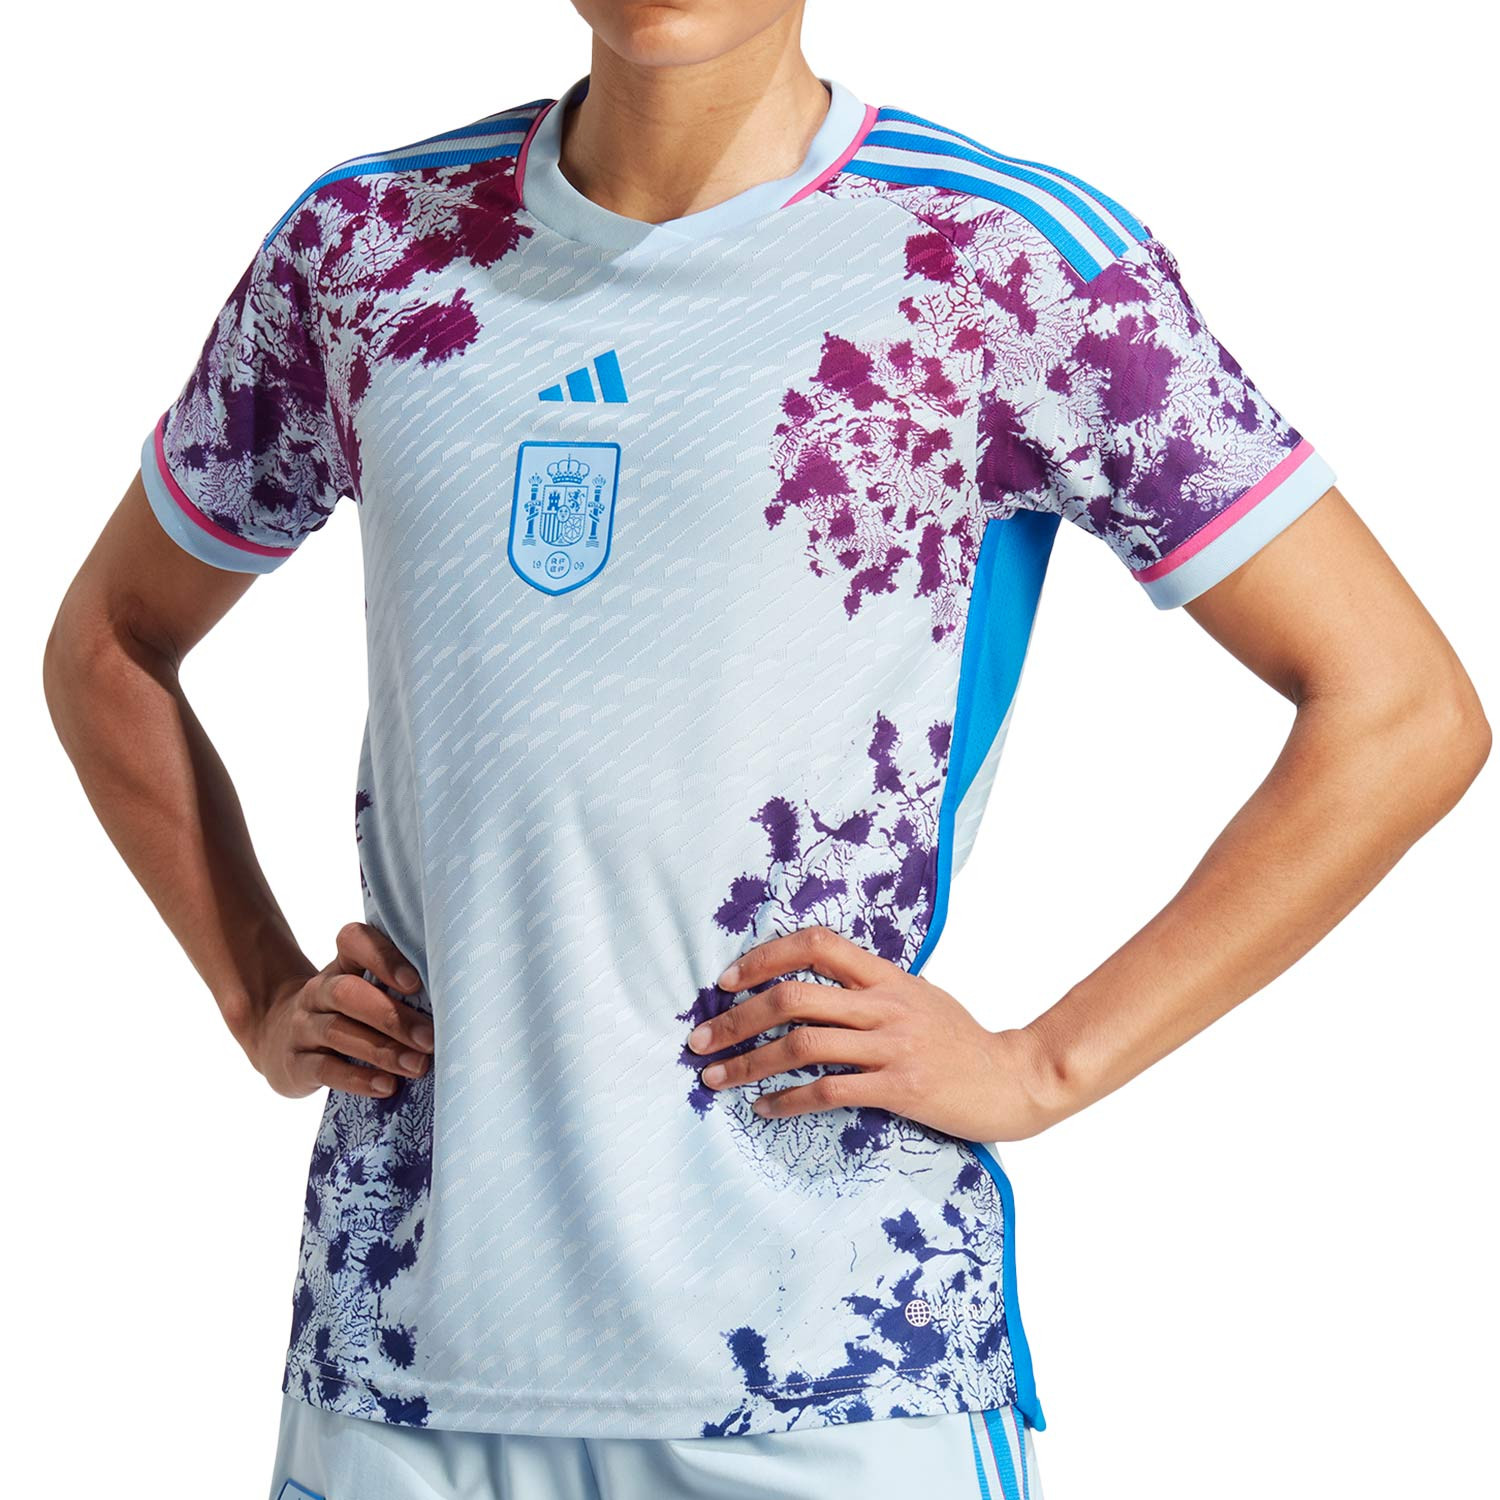 Camiseta segunda equipación selección femenina España 23 - Azul adidas